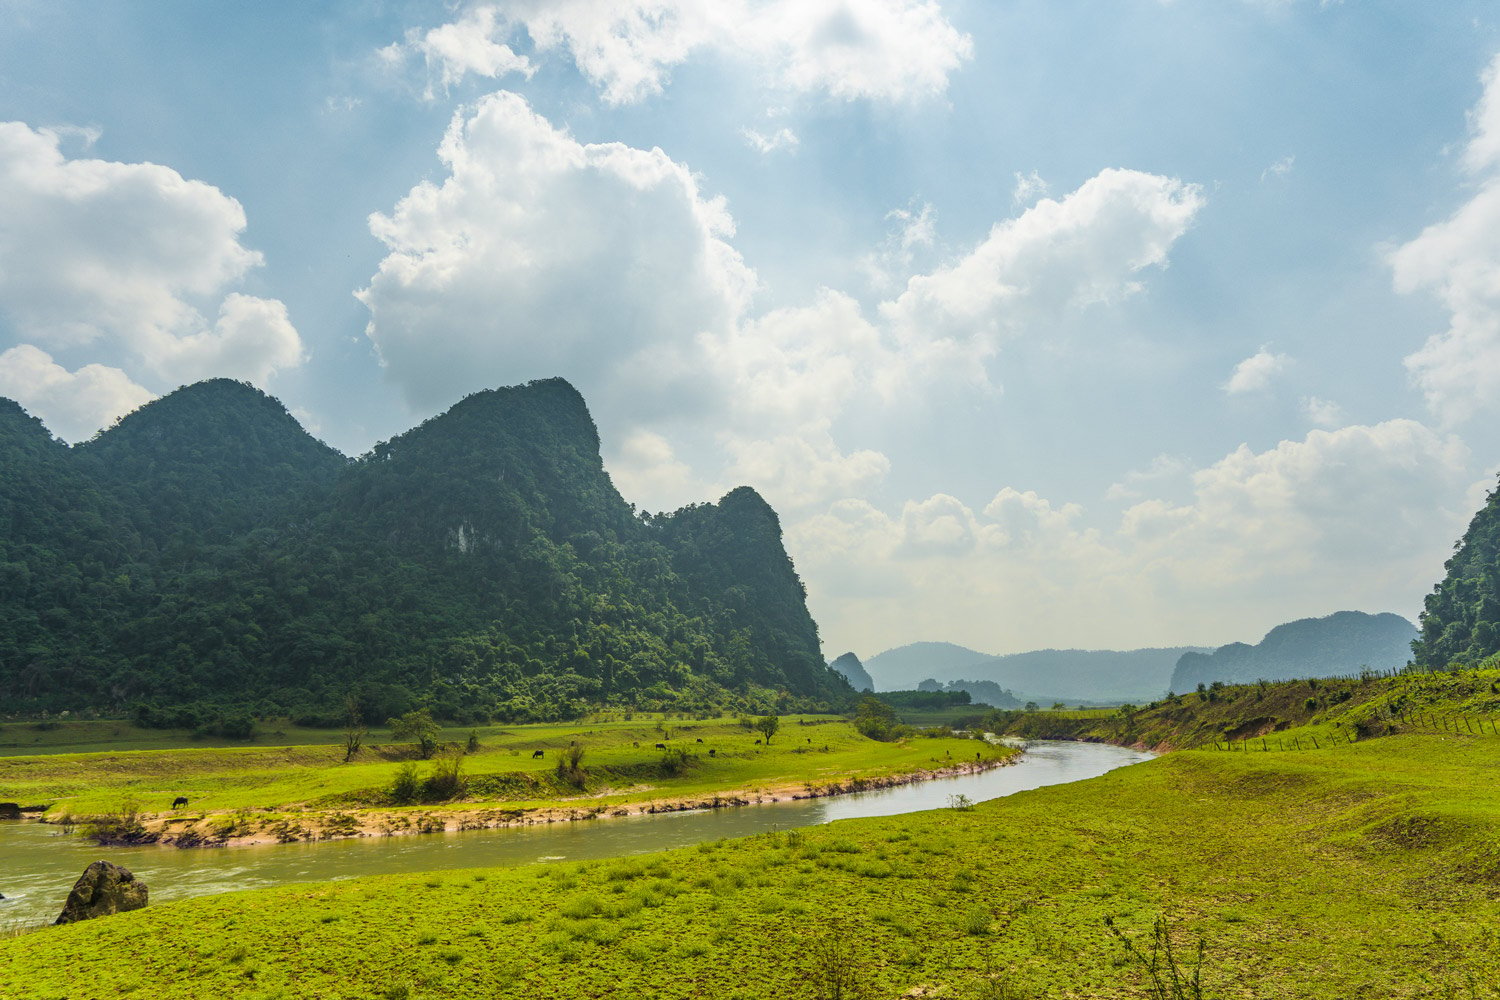 The Nan River at Tan Hoa.